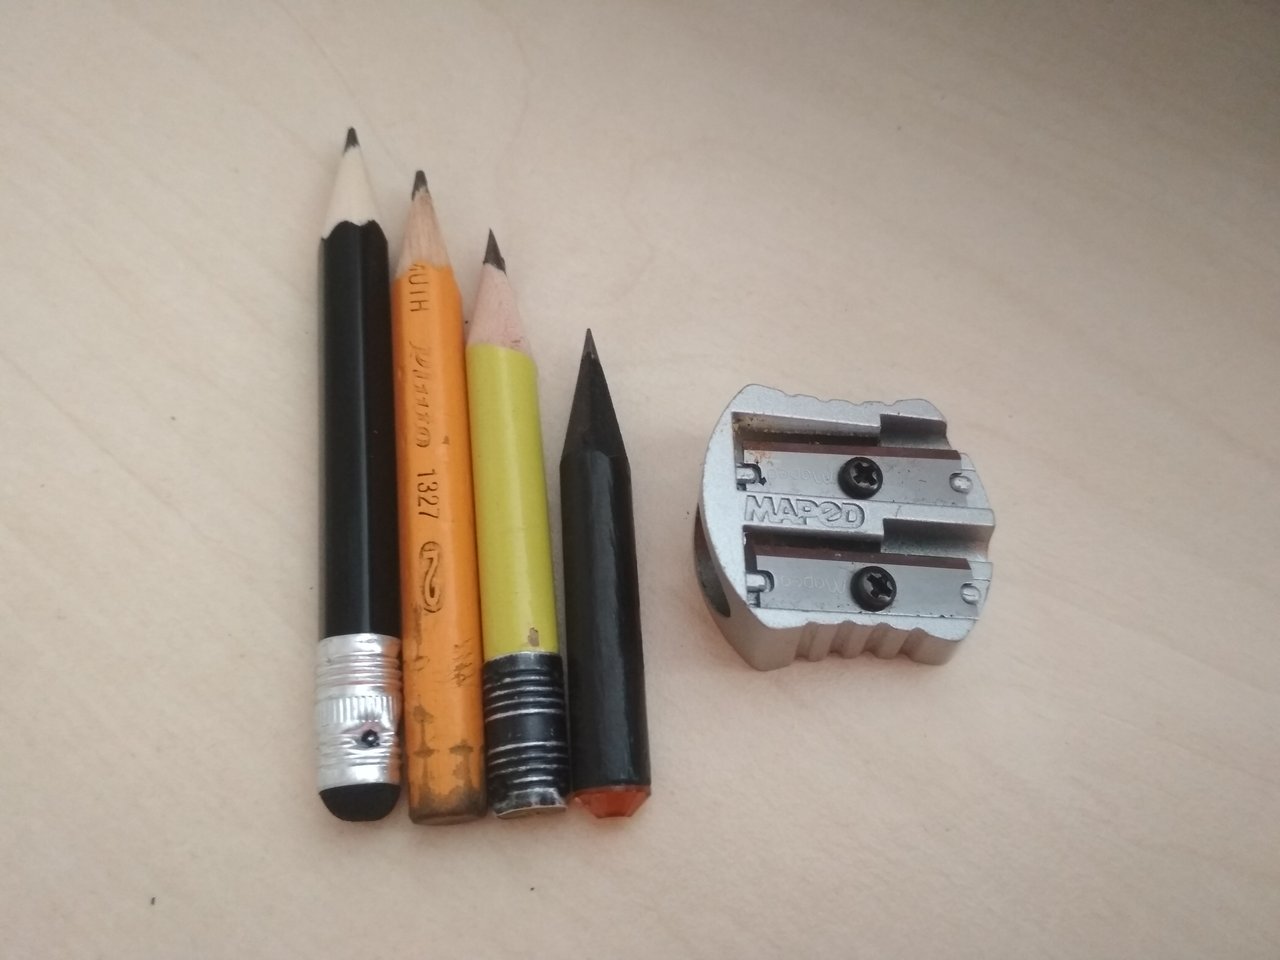 aká je dolná kritická hranica dĺžky ceruzky, že už ňou nepíšete, ale zahodíte ju?